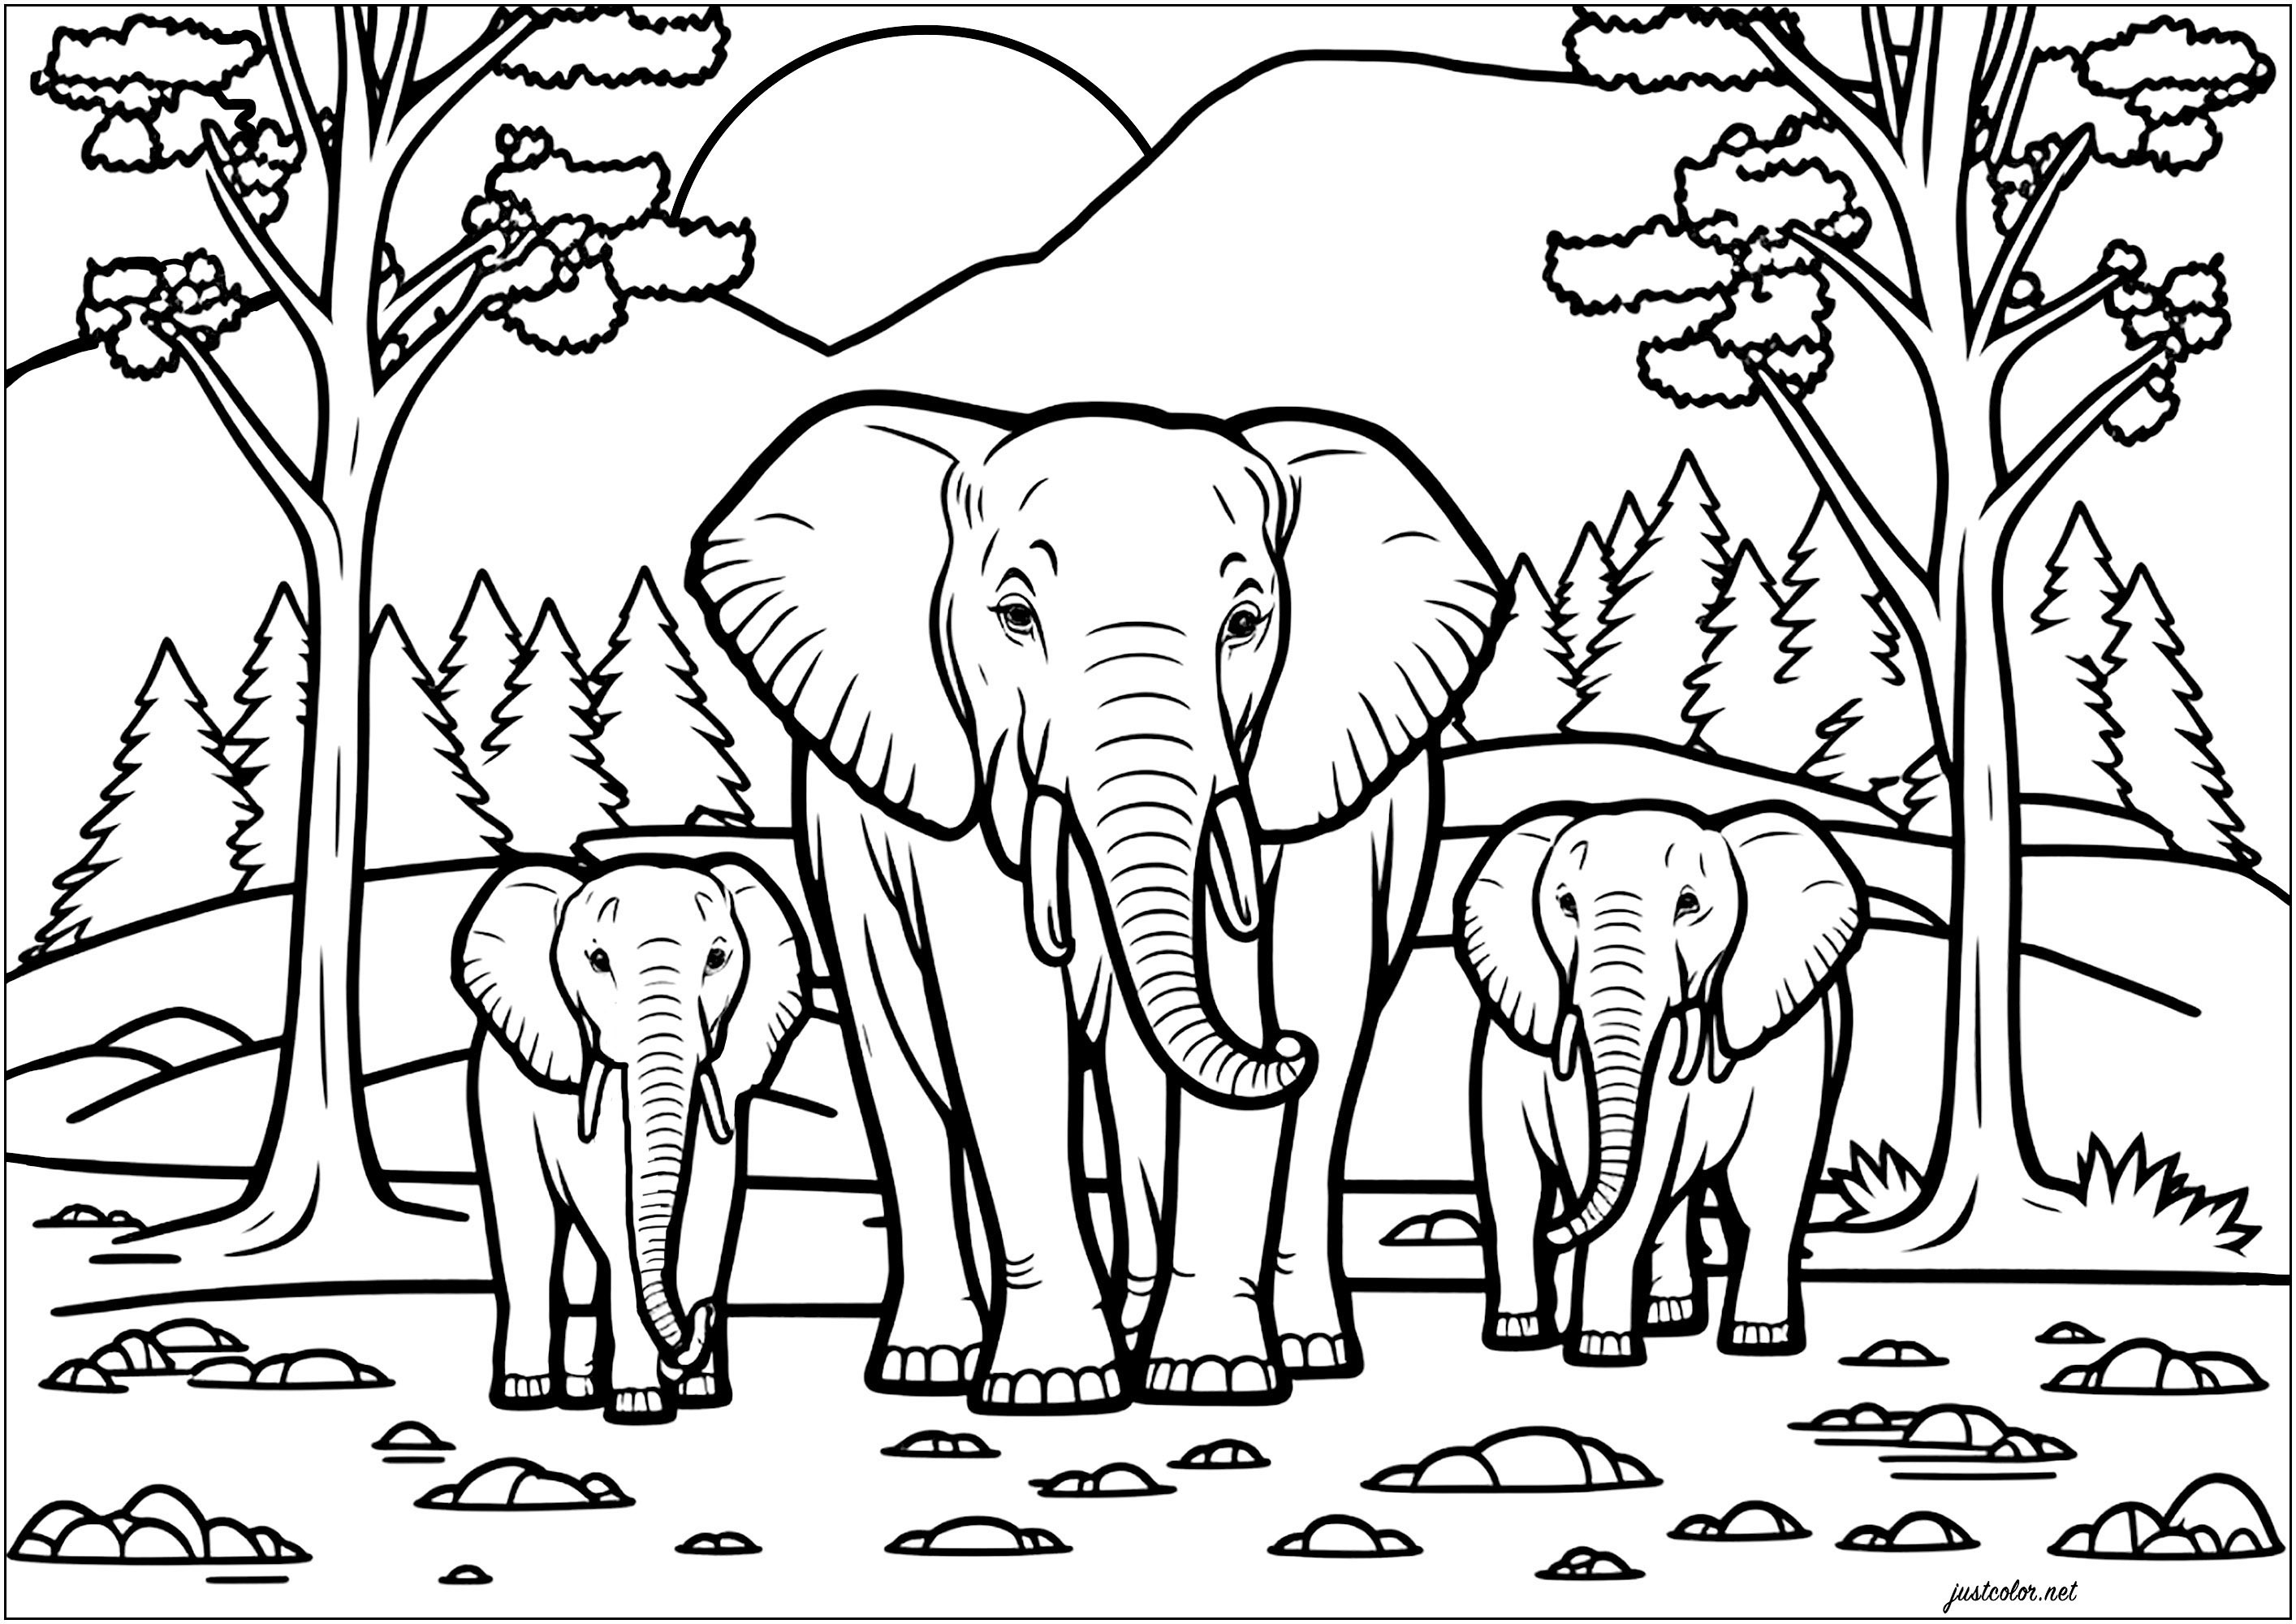 Famille d'éléphant dans la savane. En arrière plan : de jolis arbres, et une montagne derrière laquelle on voit le soleil se lever